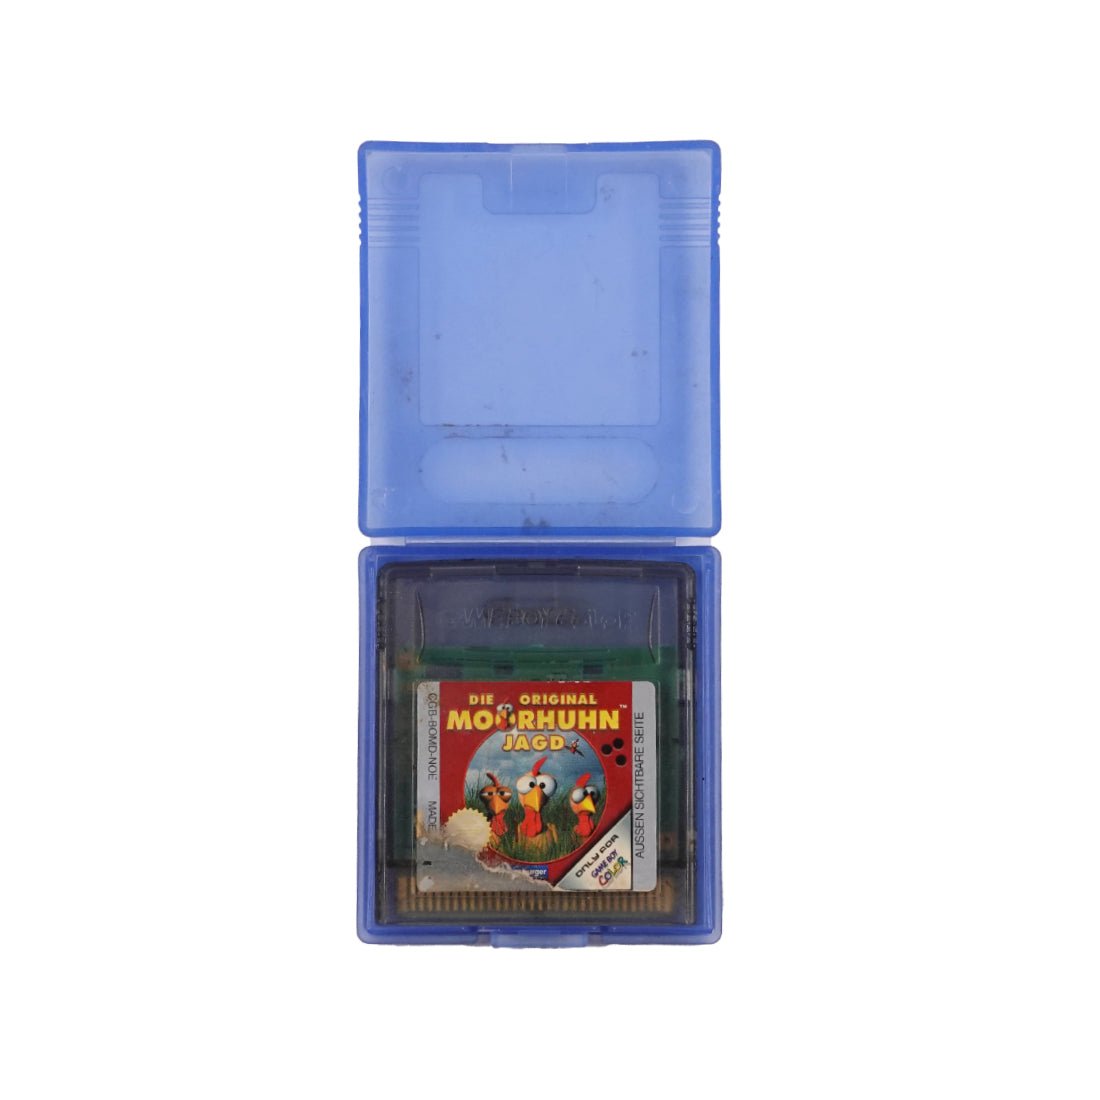 (Pre-Owned) Die Original Moorhuhn Jagd - Gameboy Classic - Store 974 | ستور ٩٧٤